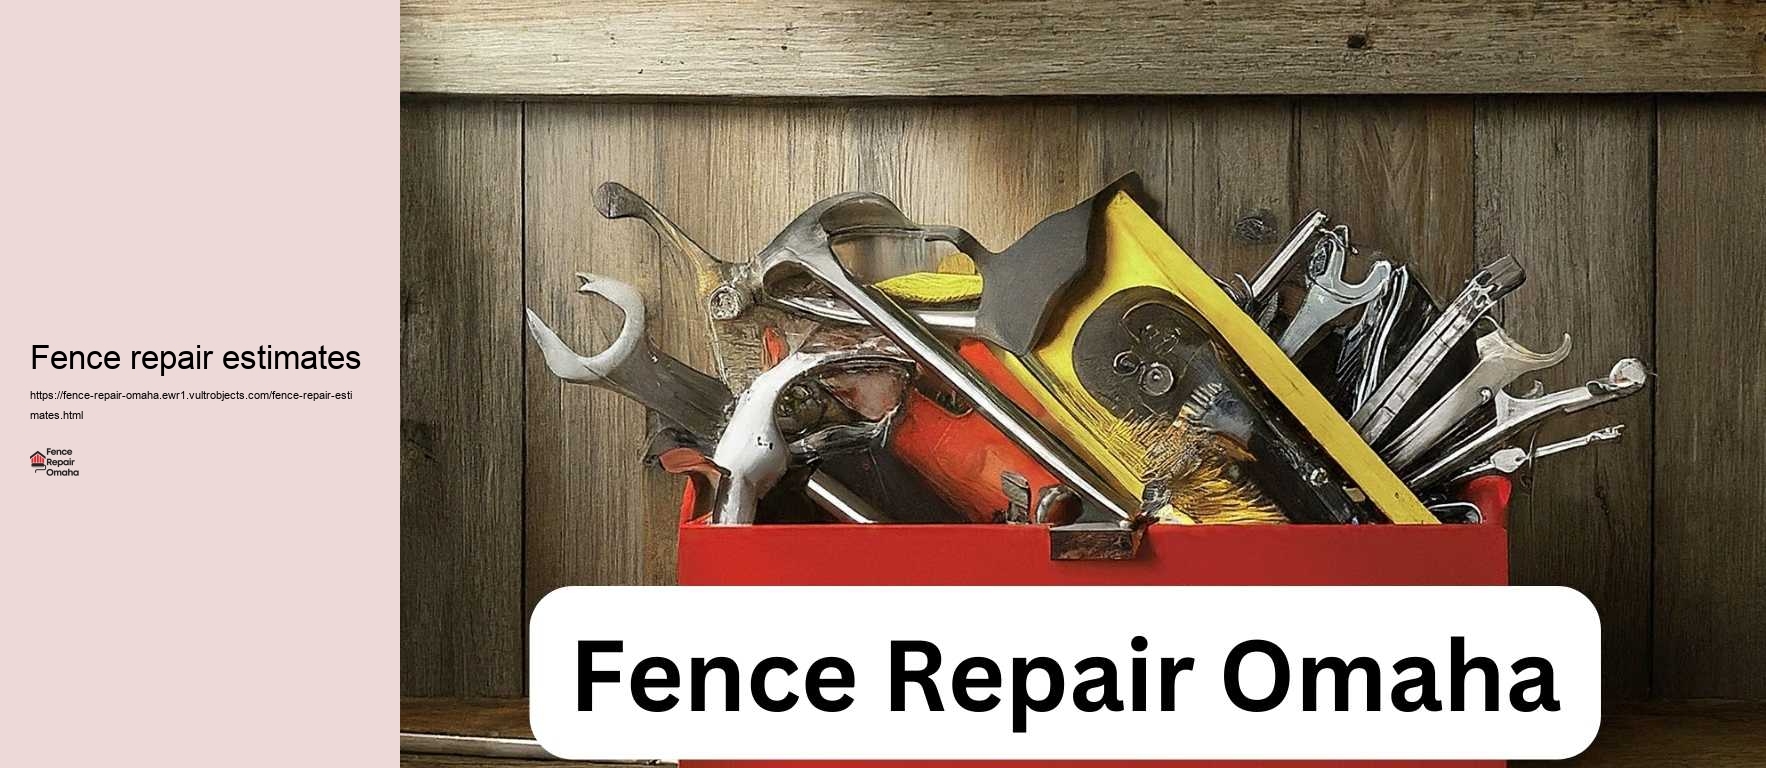 Fence repair estimates